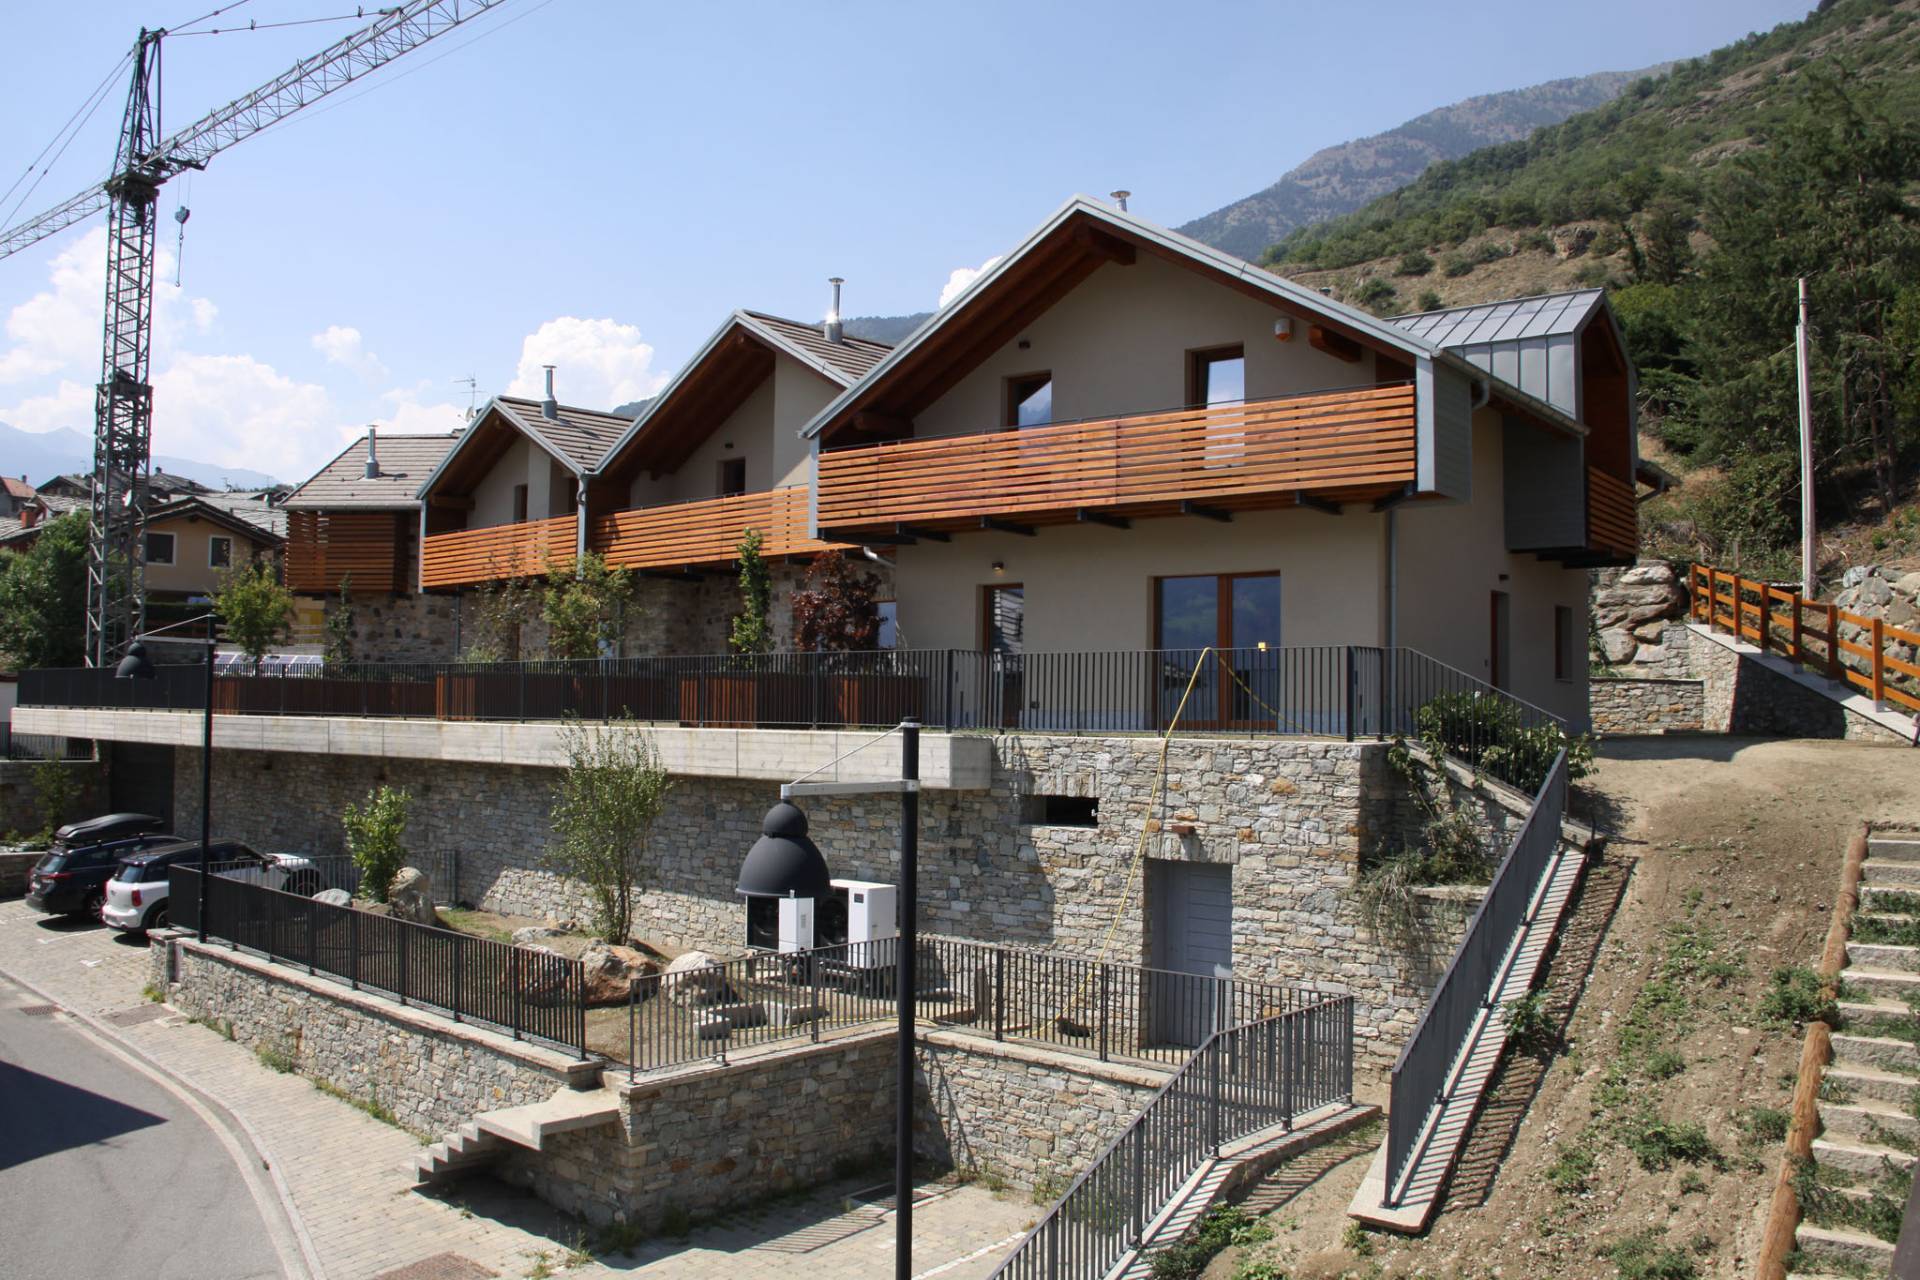 Villa a Schiera in vendita a Quart, 3 locali, prezzo € 380.000 | PortaleAgenzieImmobiliari.it